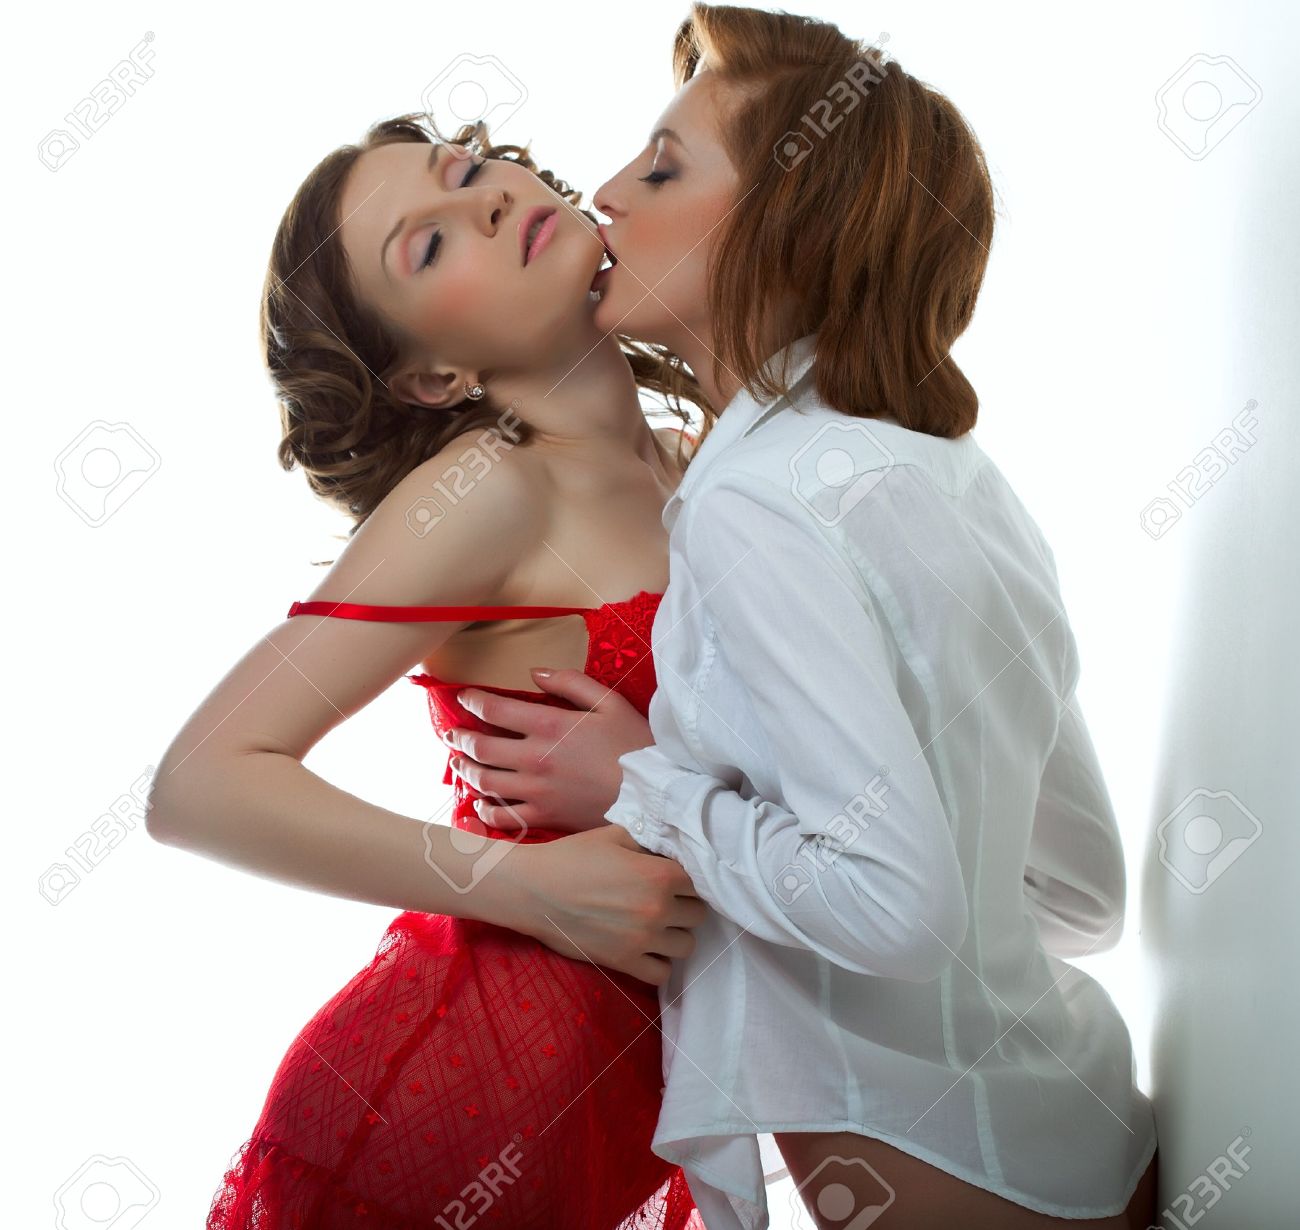 clamba cosmin share really hot girls kissing photos